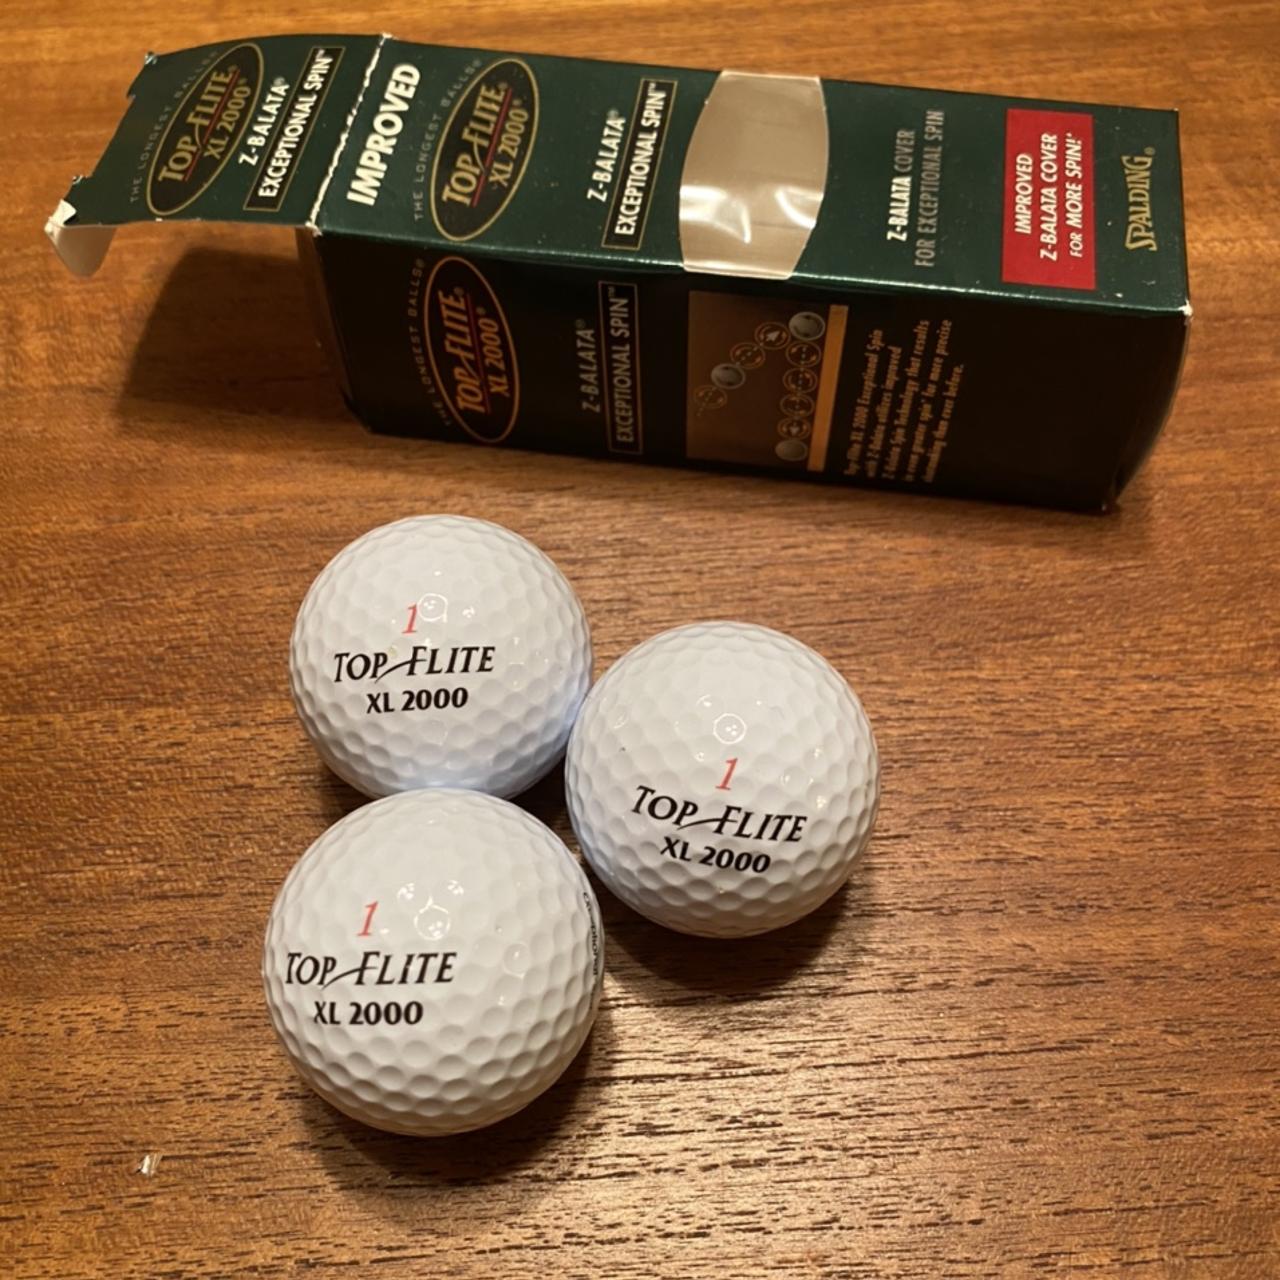 Top Flite XL 2000 3 pack of golf balls Brand new - Depop